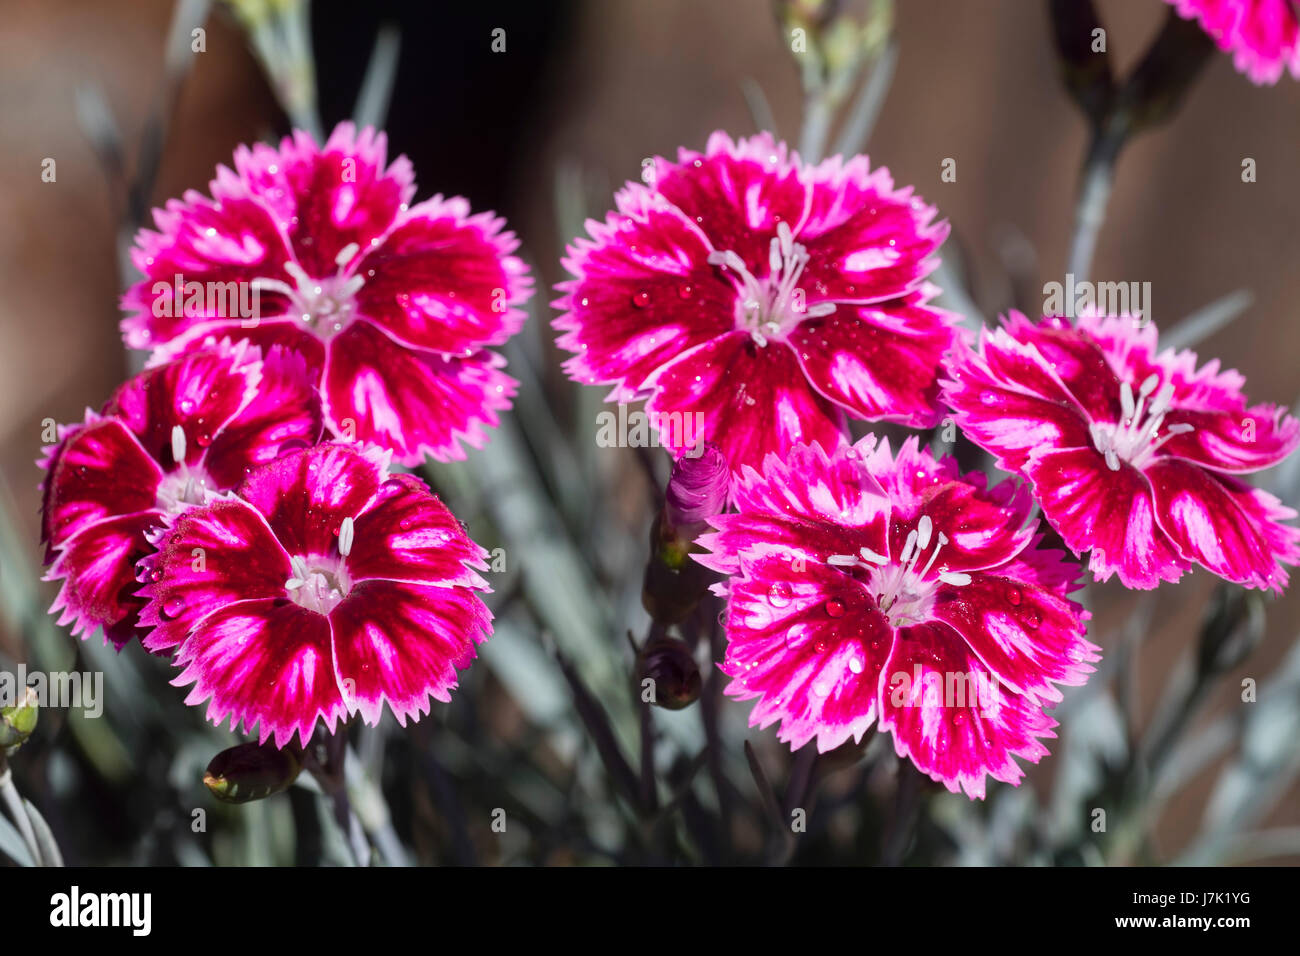 Fleurs rouge vif et rose de la rose de jardin compact, Dianthus 'Supernova', une longue floraison, la variété parfumée Banque D'Images